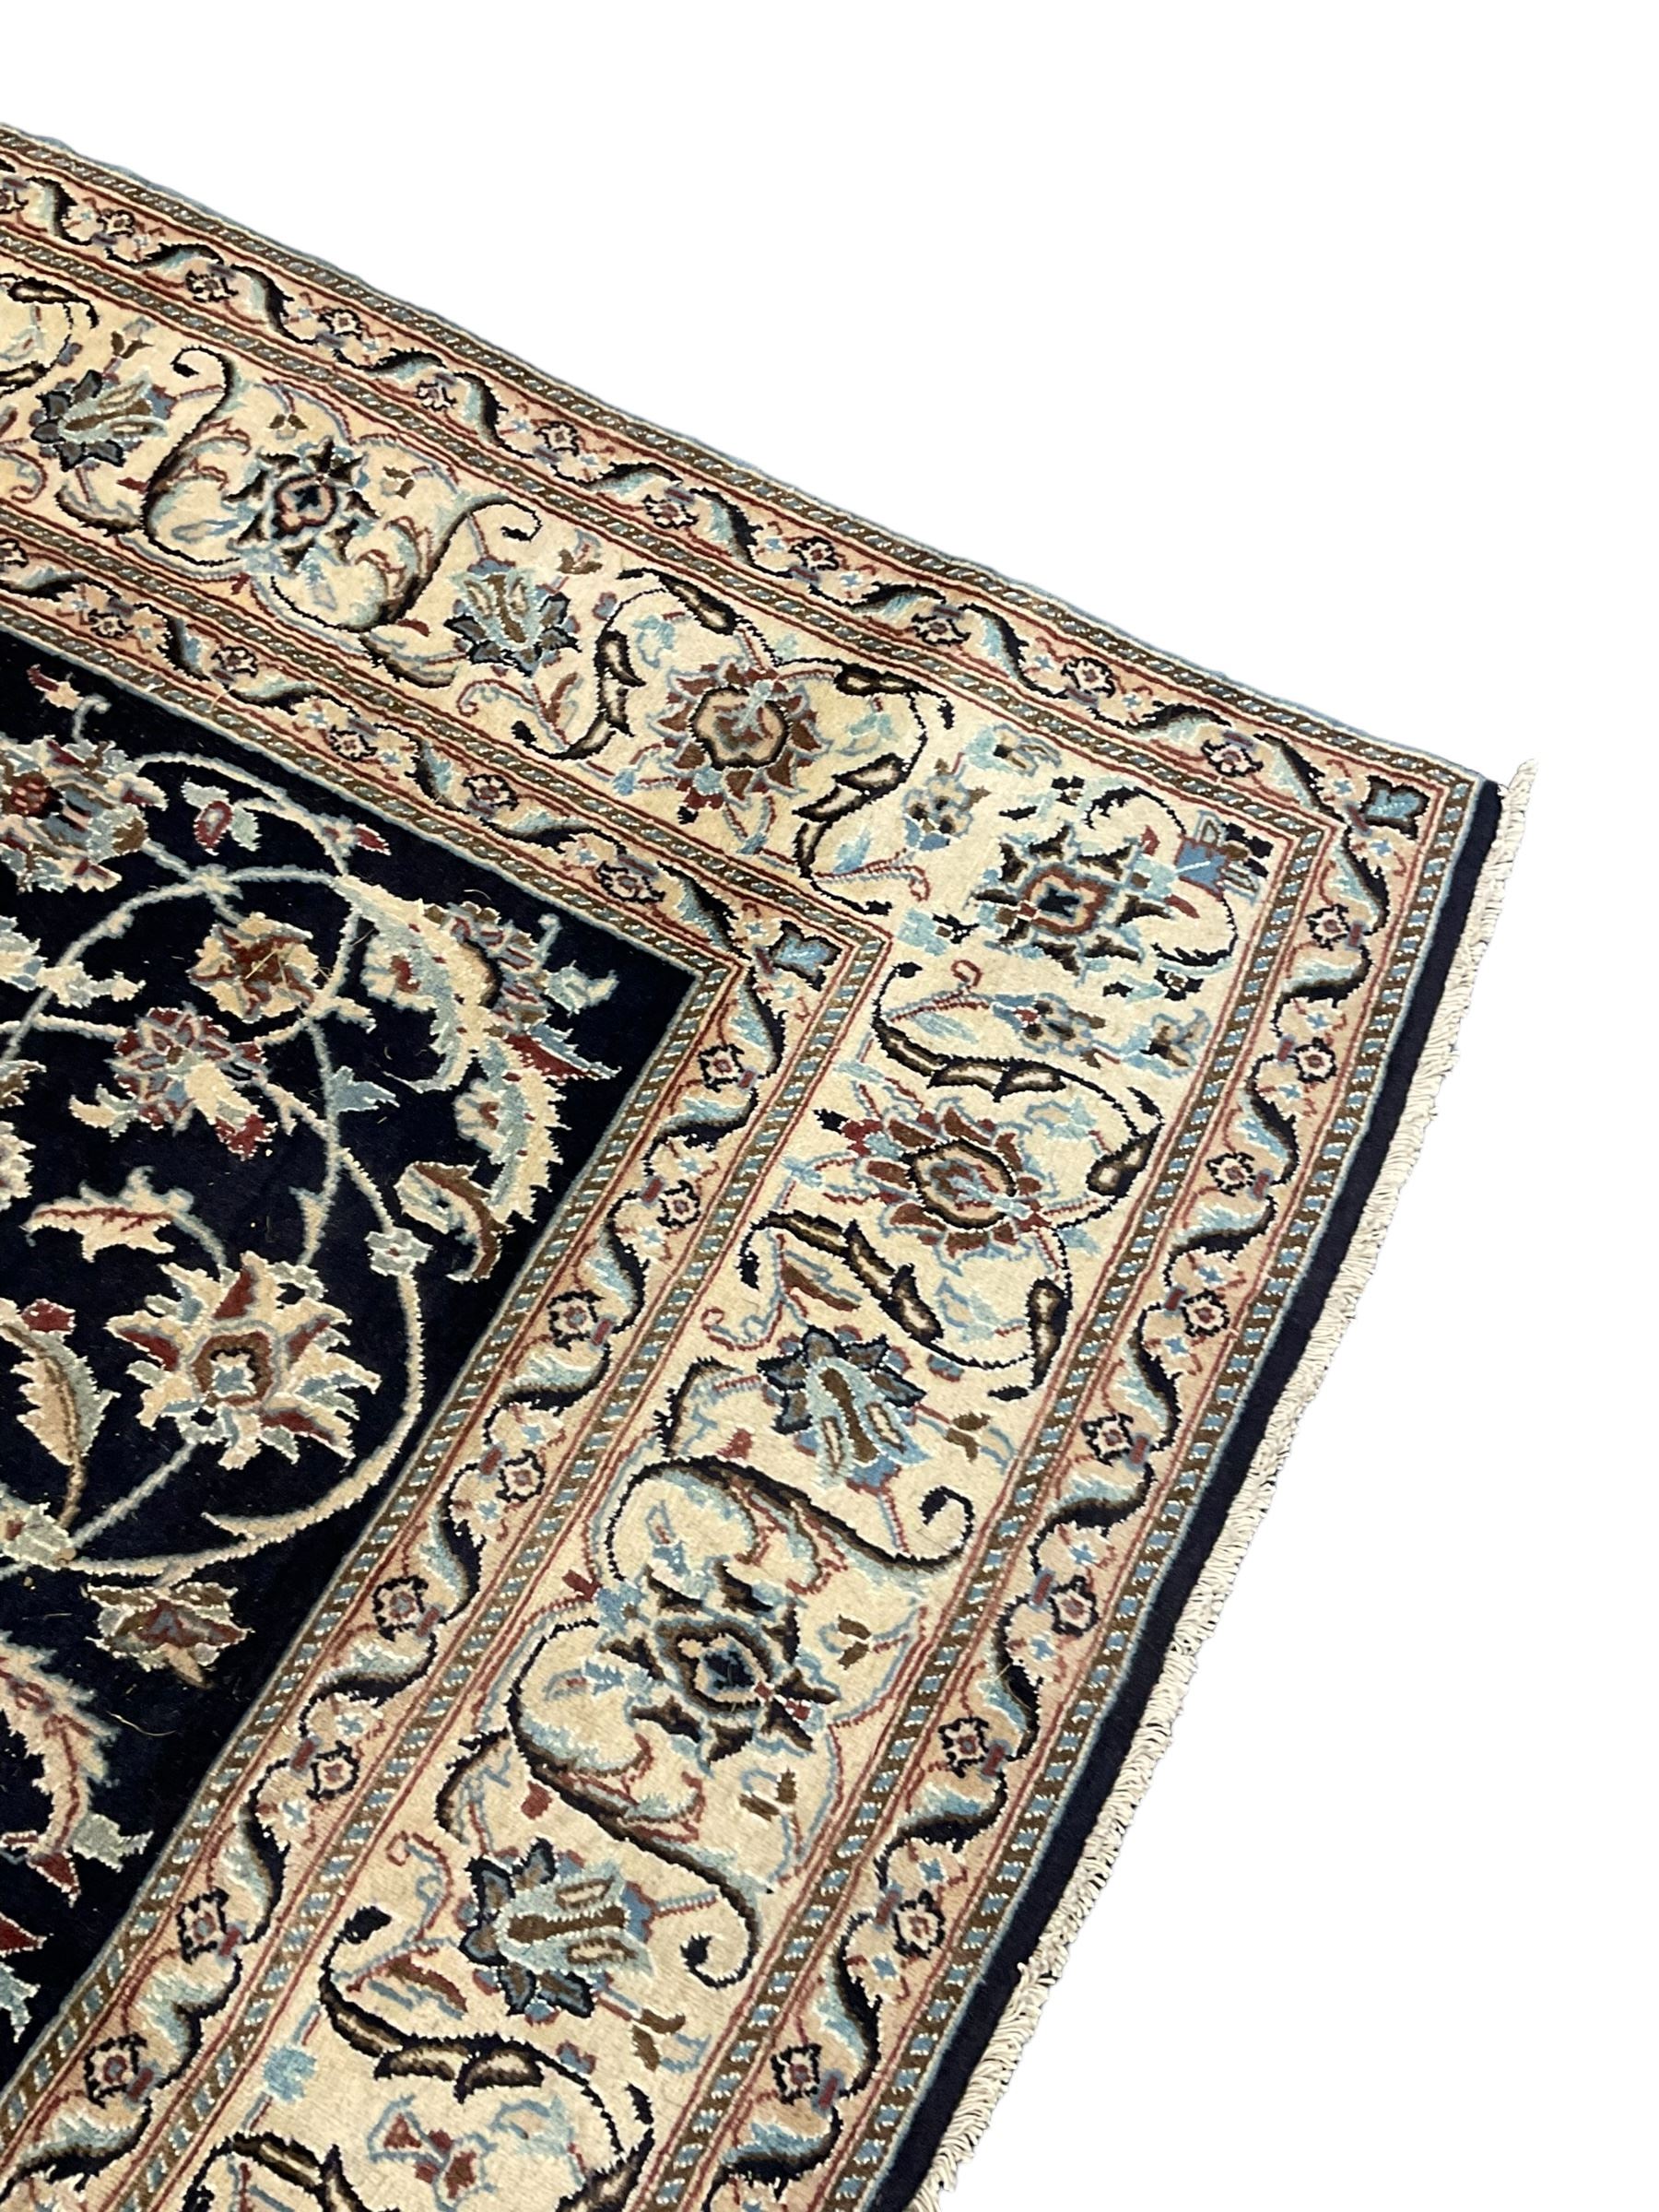 Central Persian part silk indigo ground Nain carpet - Image 2 of 7